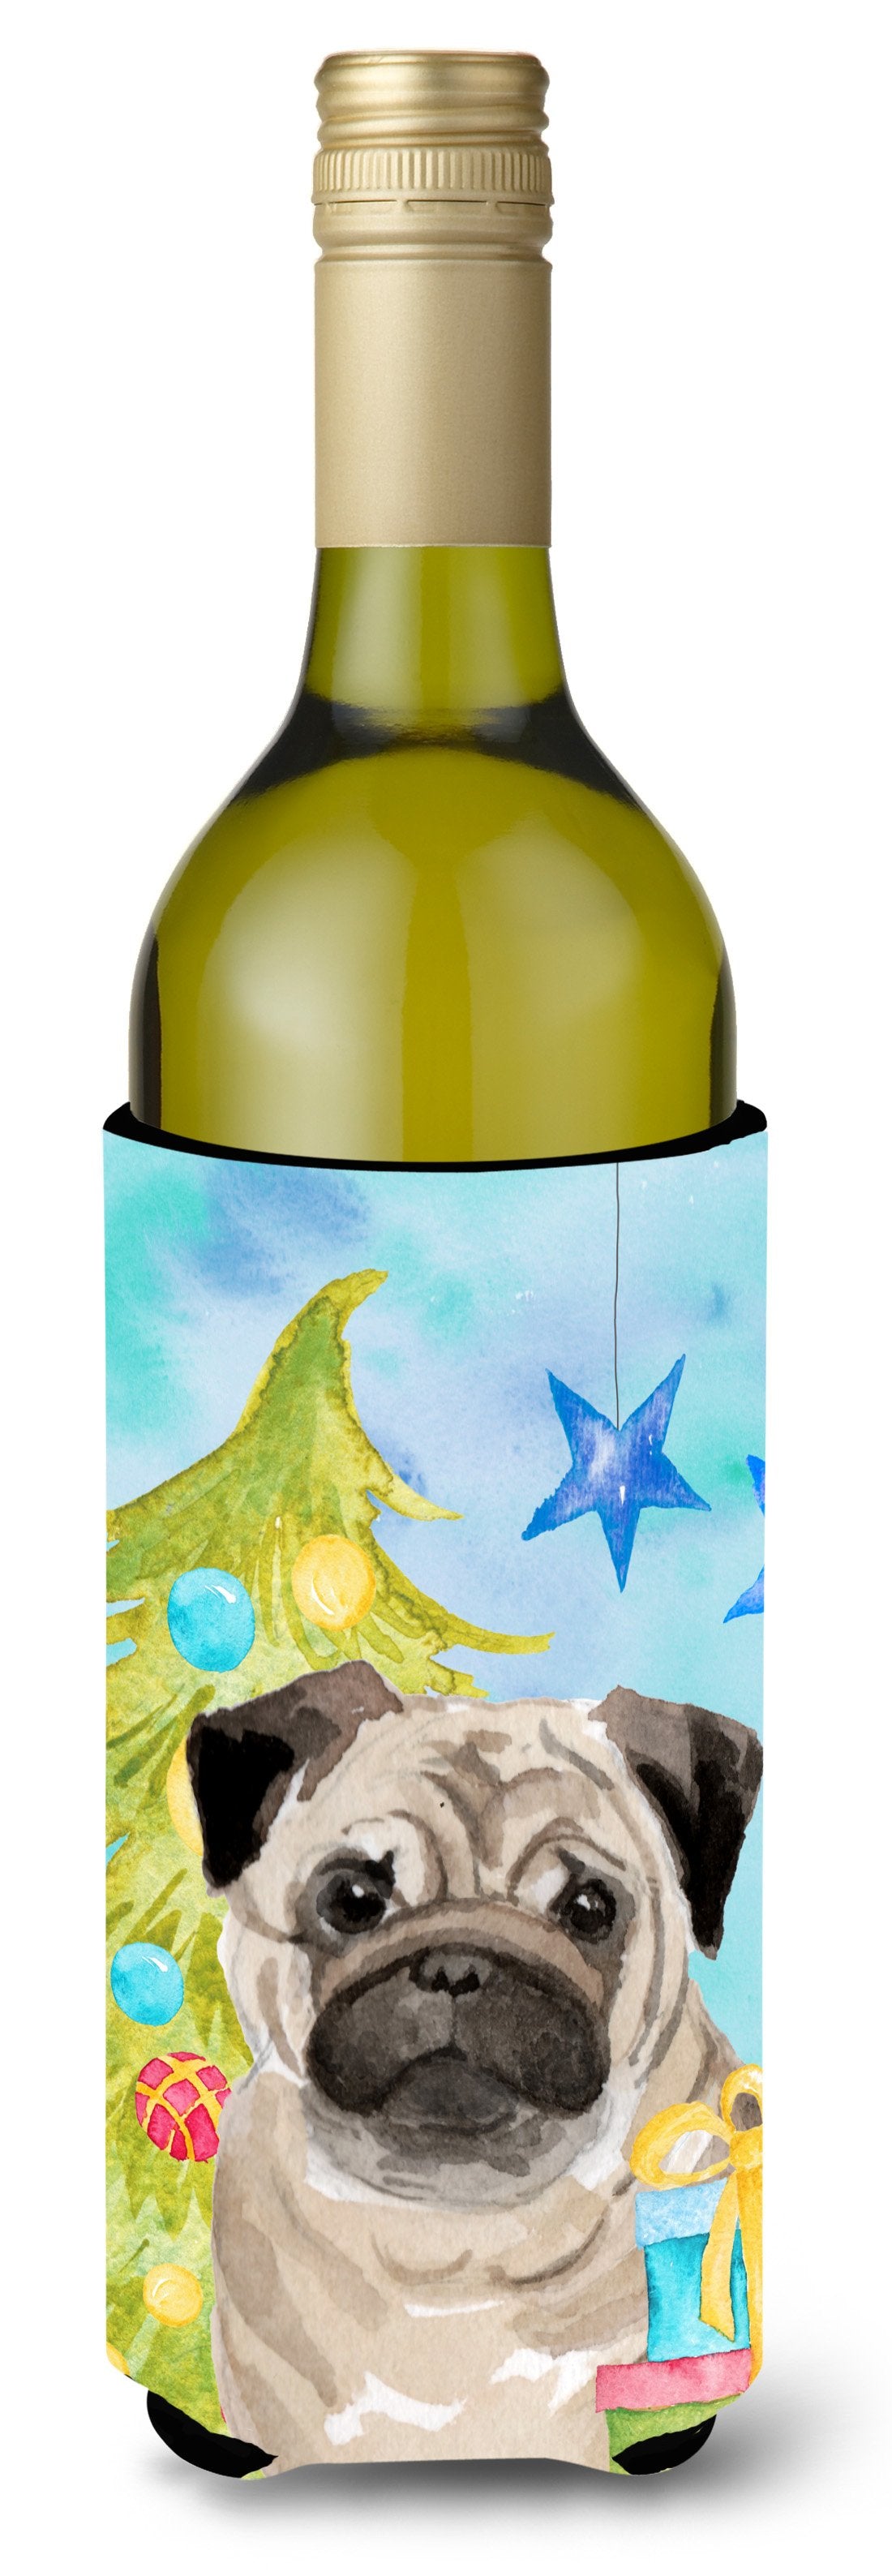 Fawn Pug Christmas Wine Bottle Beverge Insulator Hugger BB9426LITERK by Caroline's Treasures